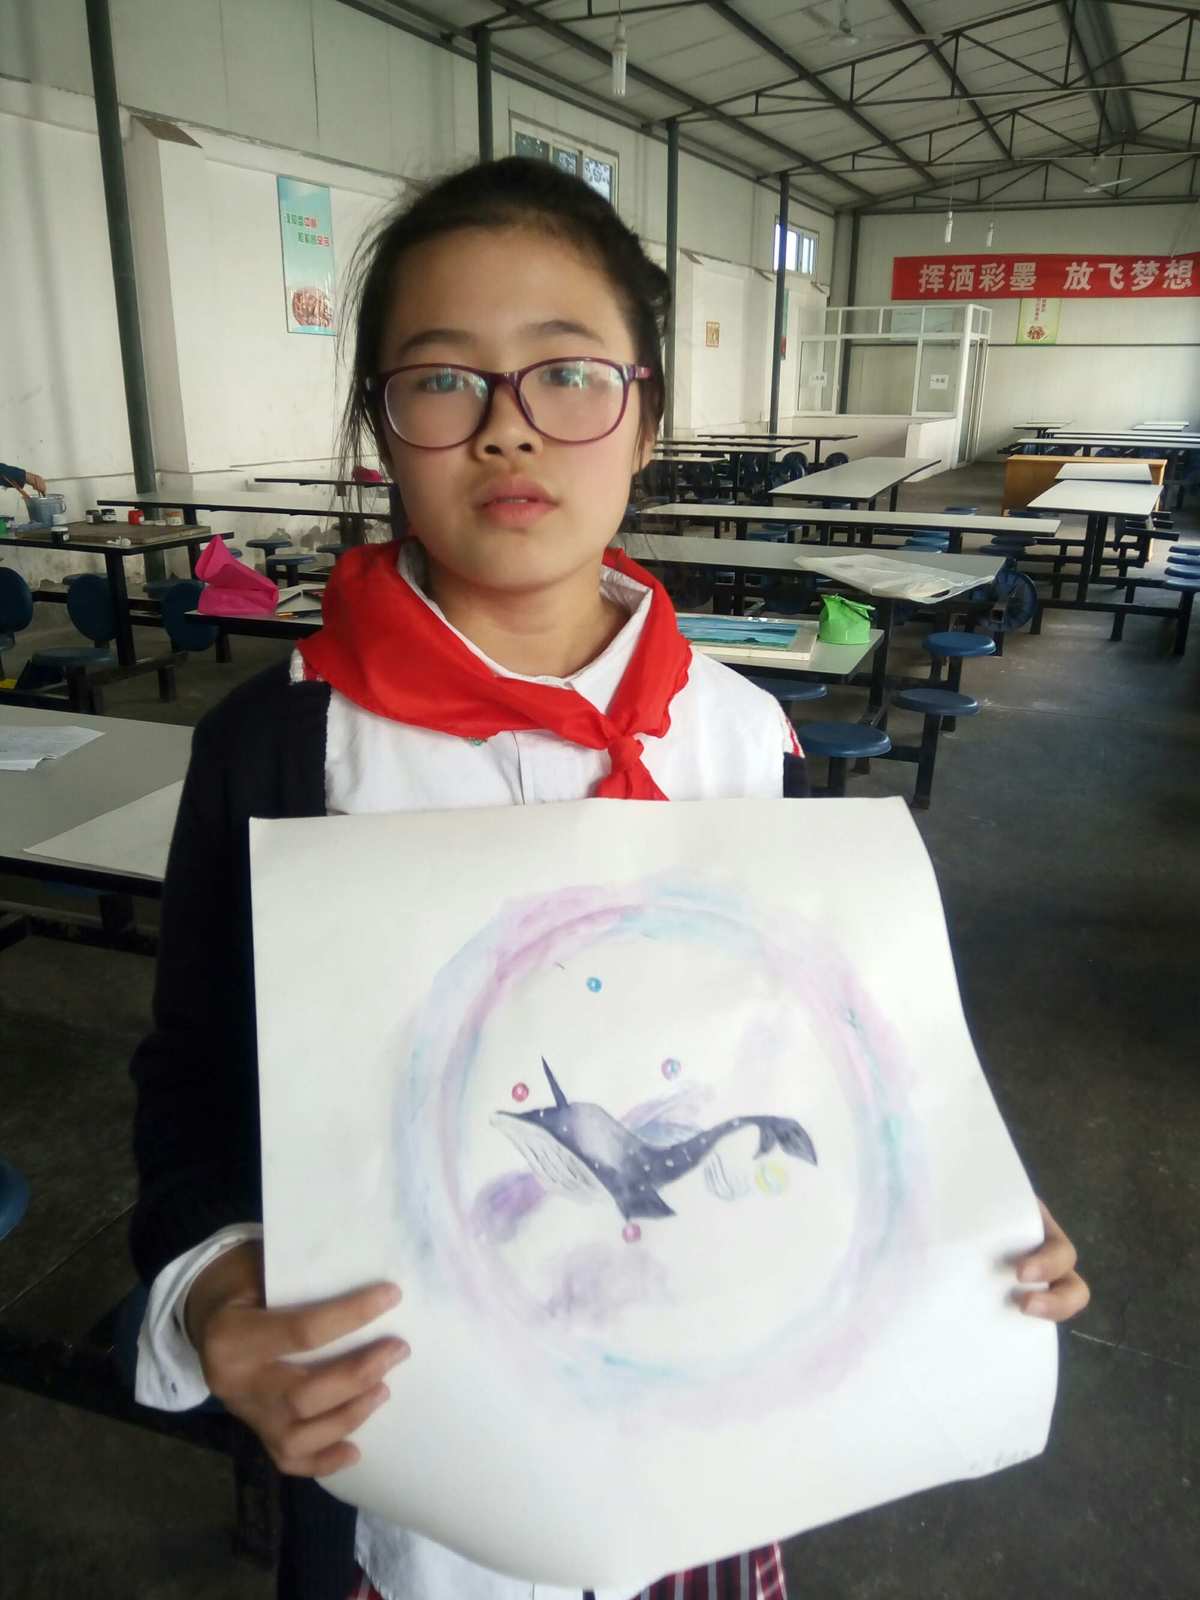 中国循证医学中心 培训_戴安琳 健美操 中国儿童中心_中国少年儿童造型艺术培训中心